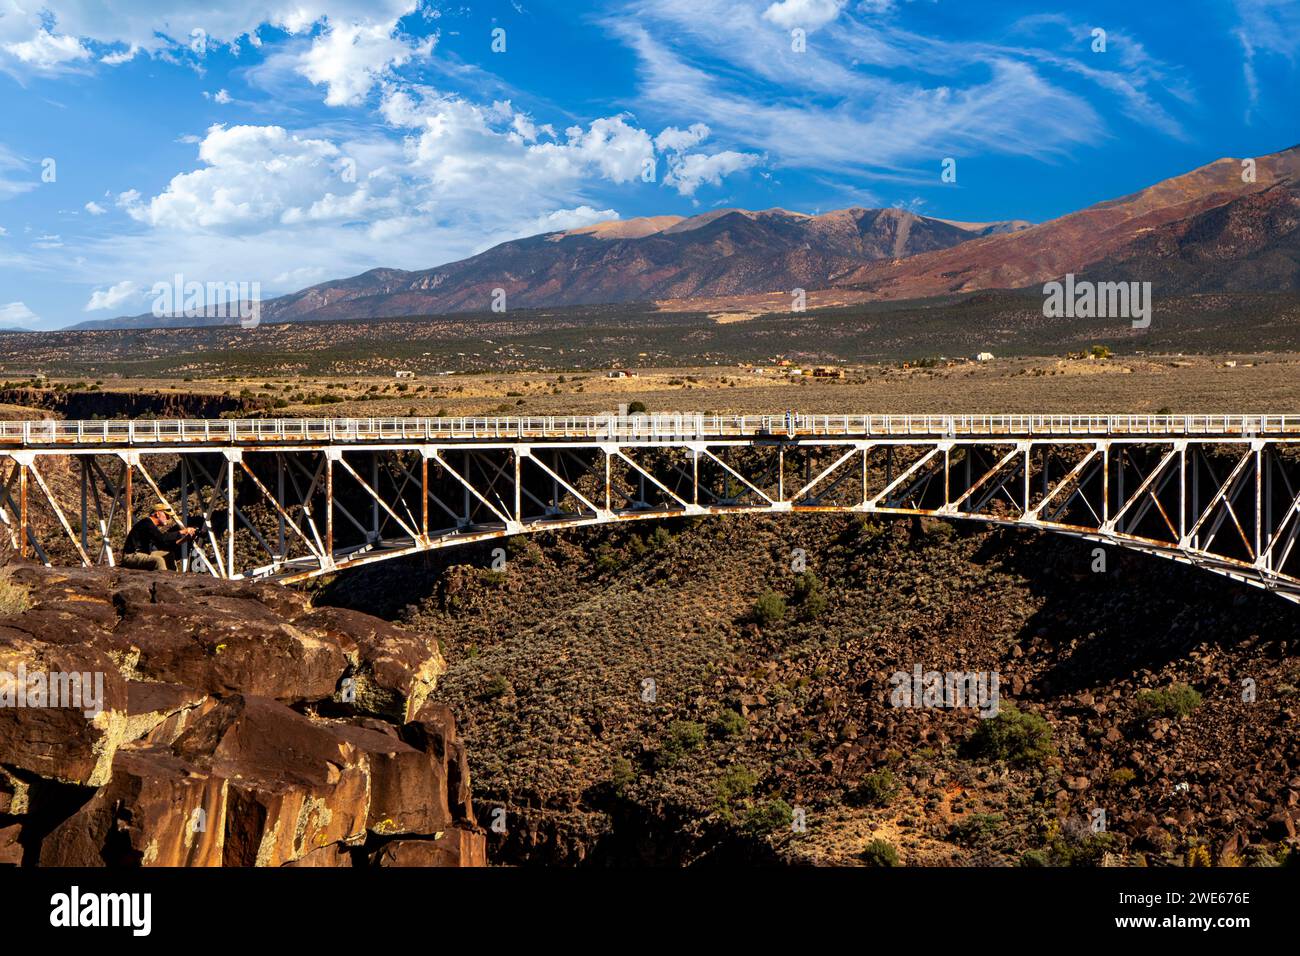 Le Rio Grande gorge Bridge, au nord de Taos, au Nouveau-Mexique, attire des visiteurs du monde entier. Banque D'Images